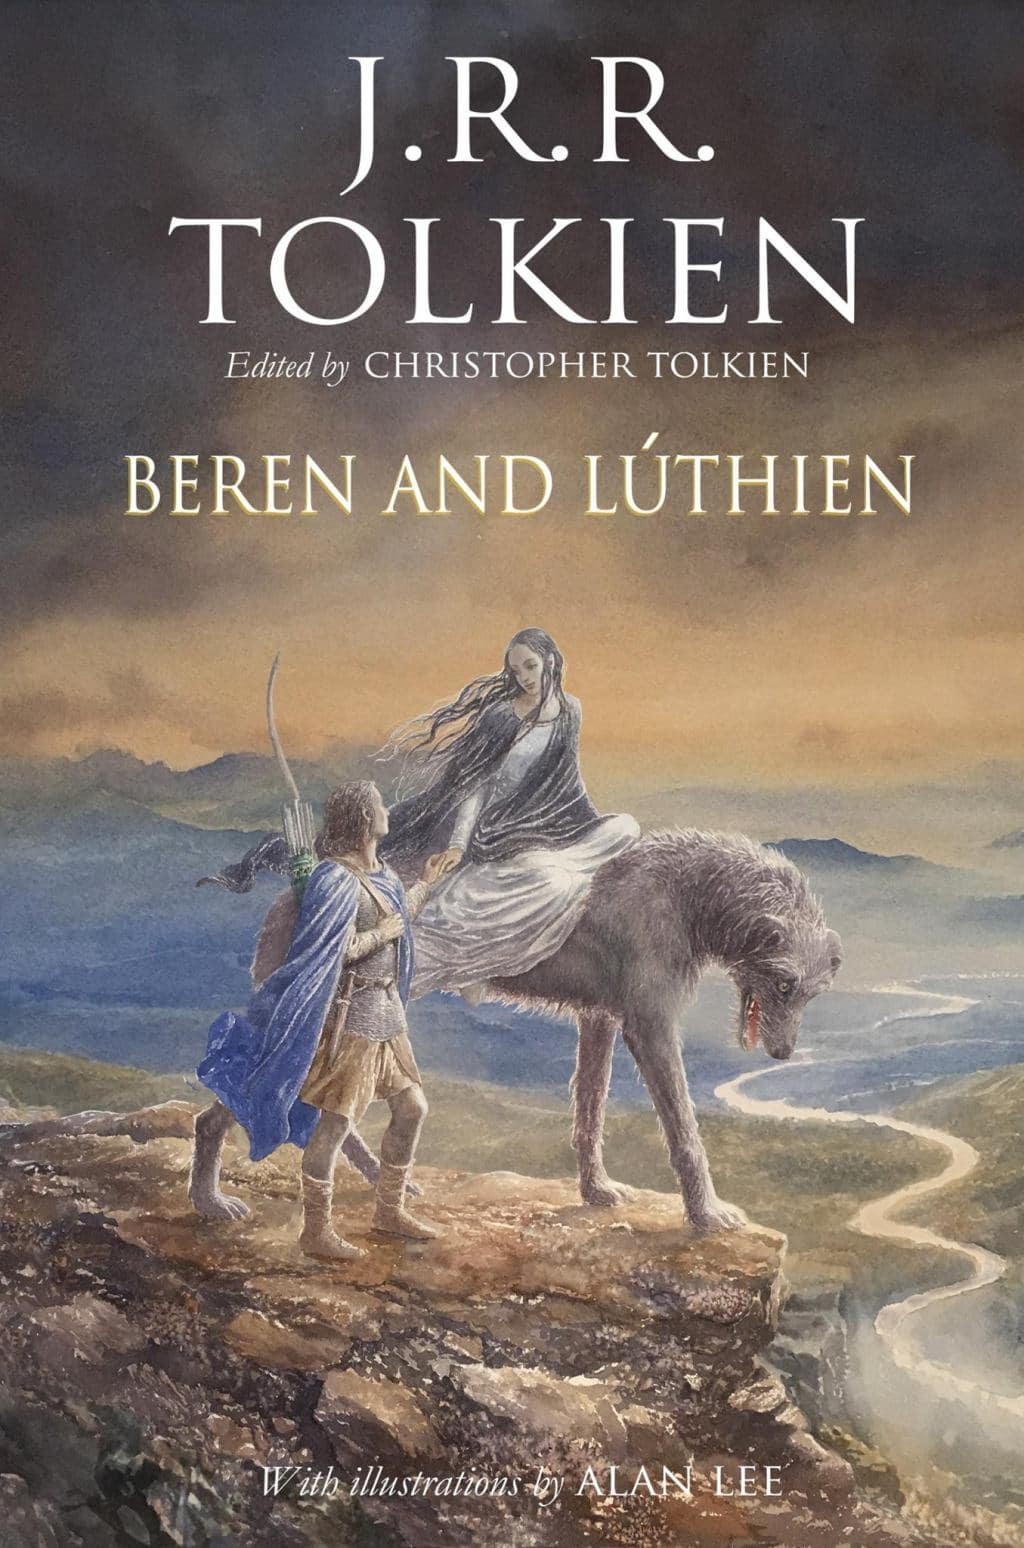 Publican un relato de Tolkien cien años después de que lo escribiera